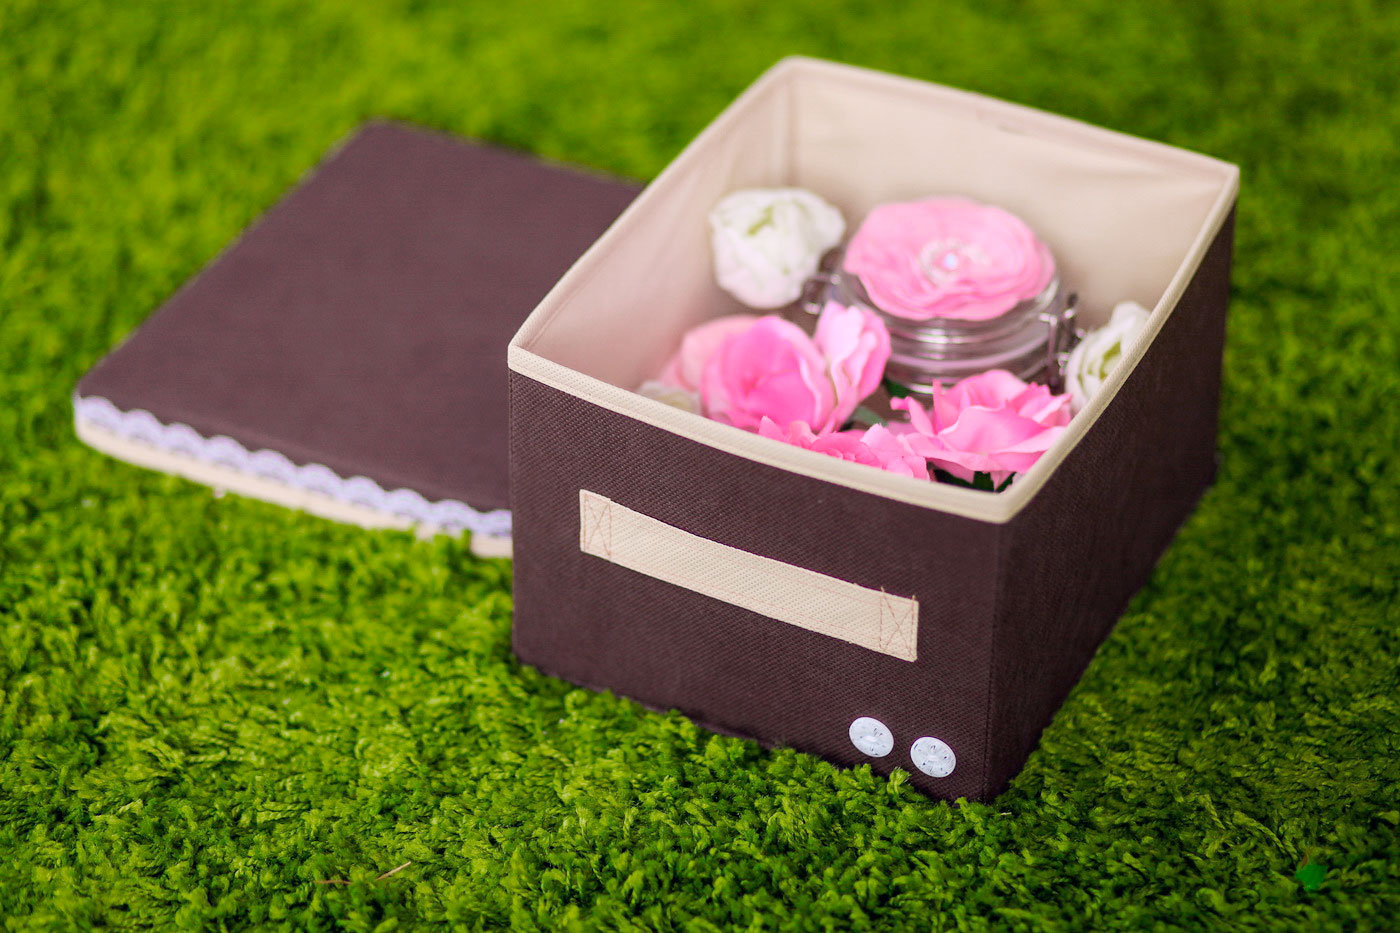 Коробка для хранения Средняя "Chocolate Cake" с крышкой - ящик для хранения